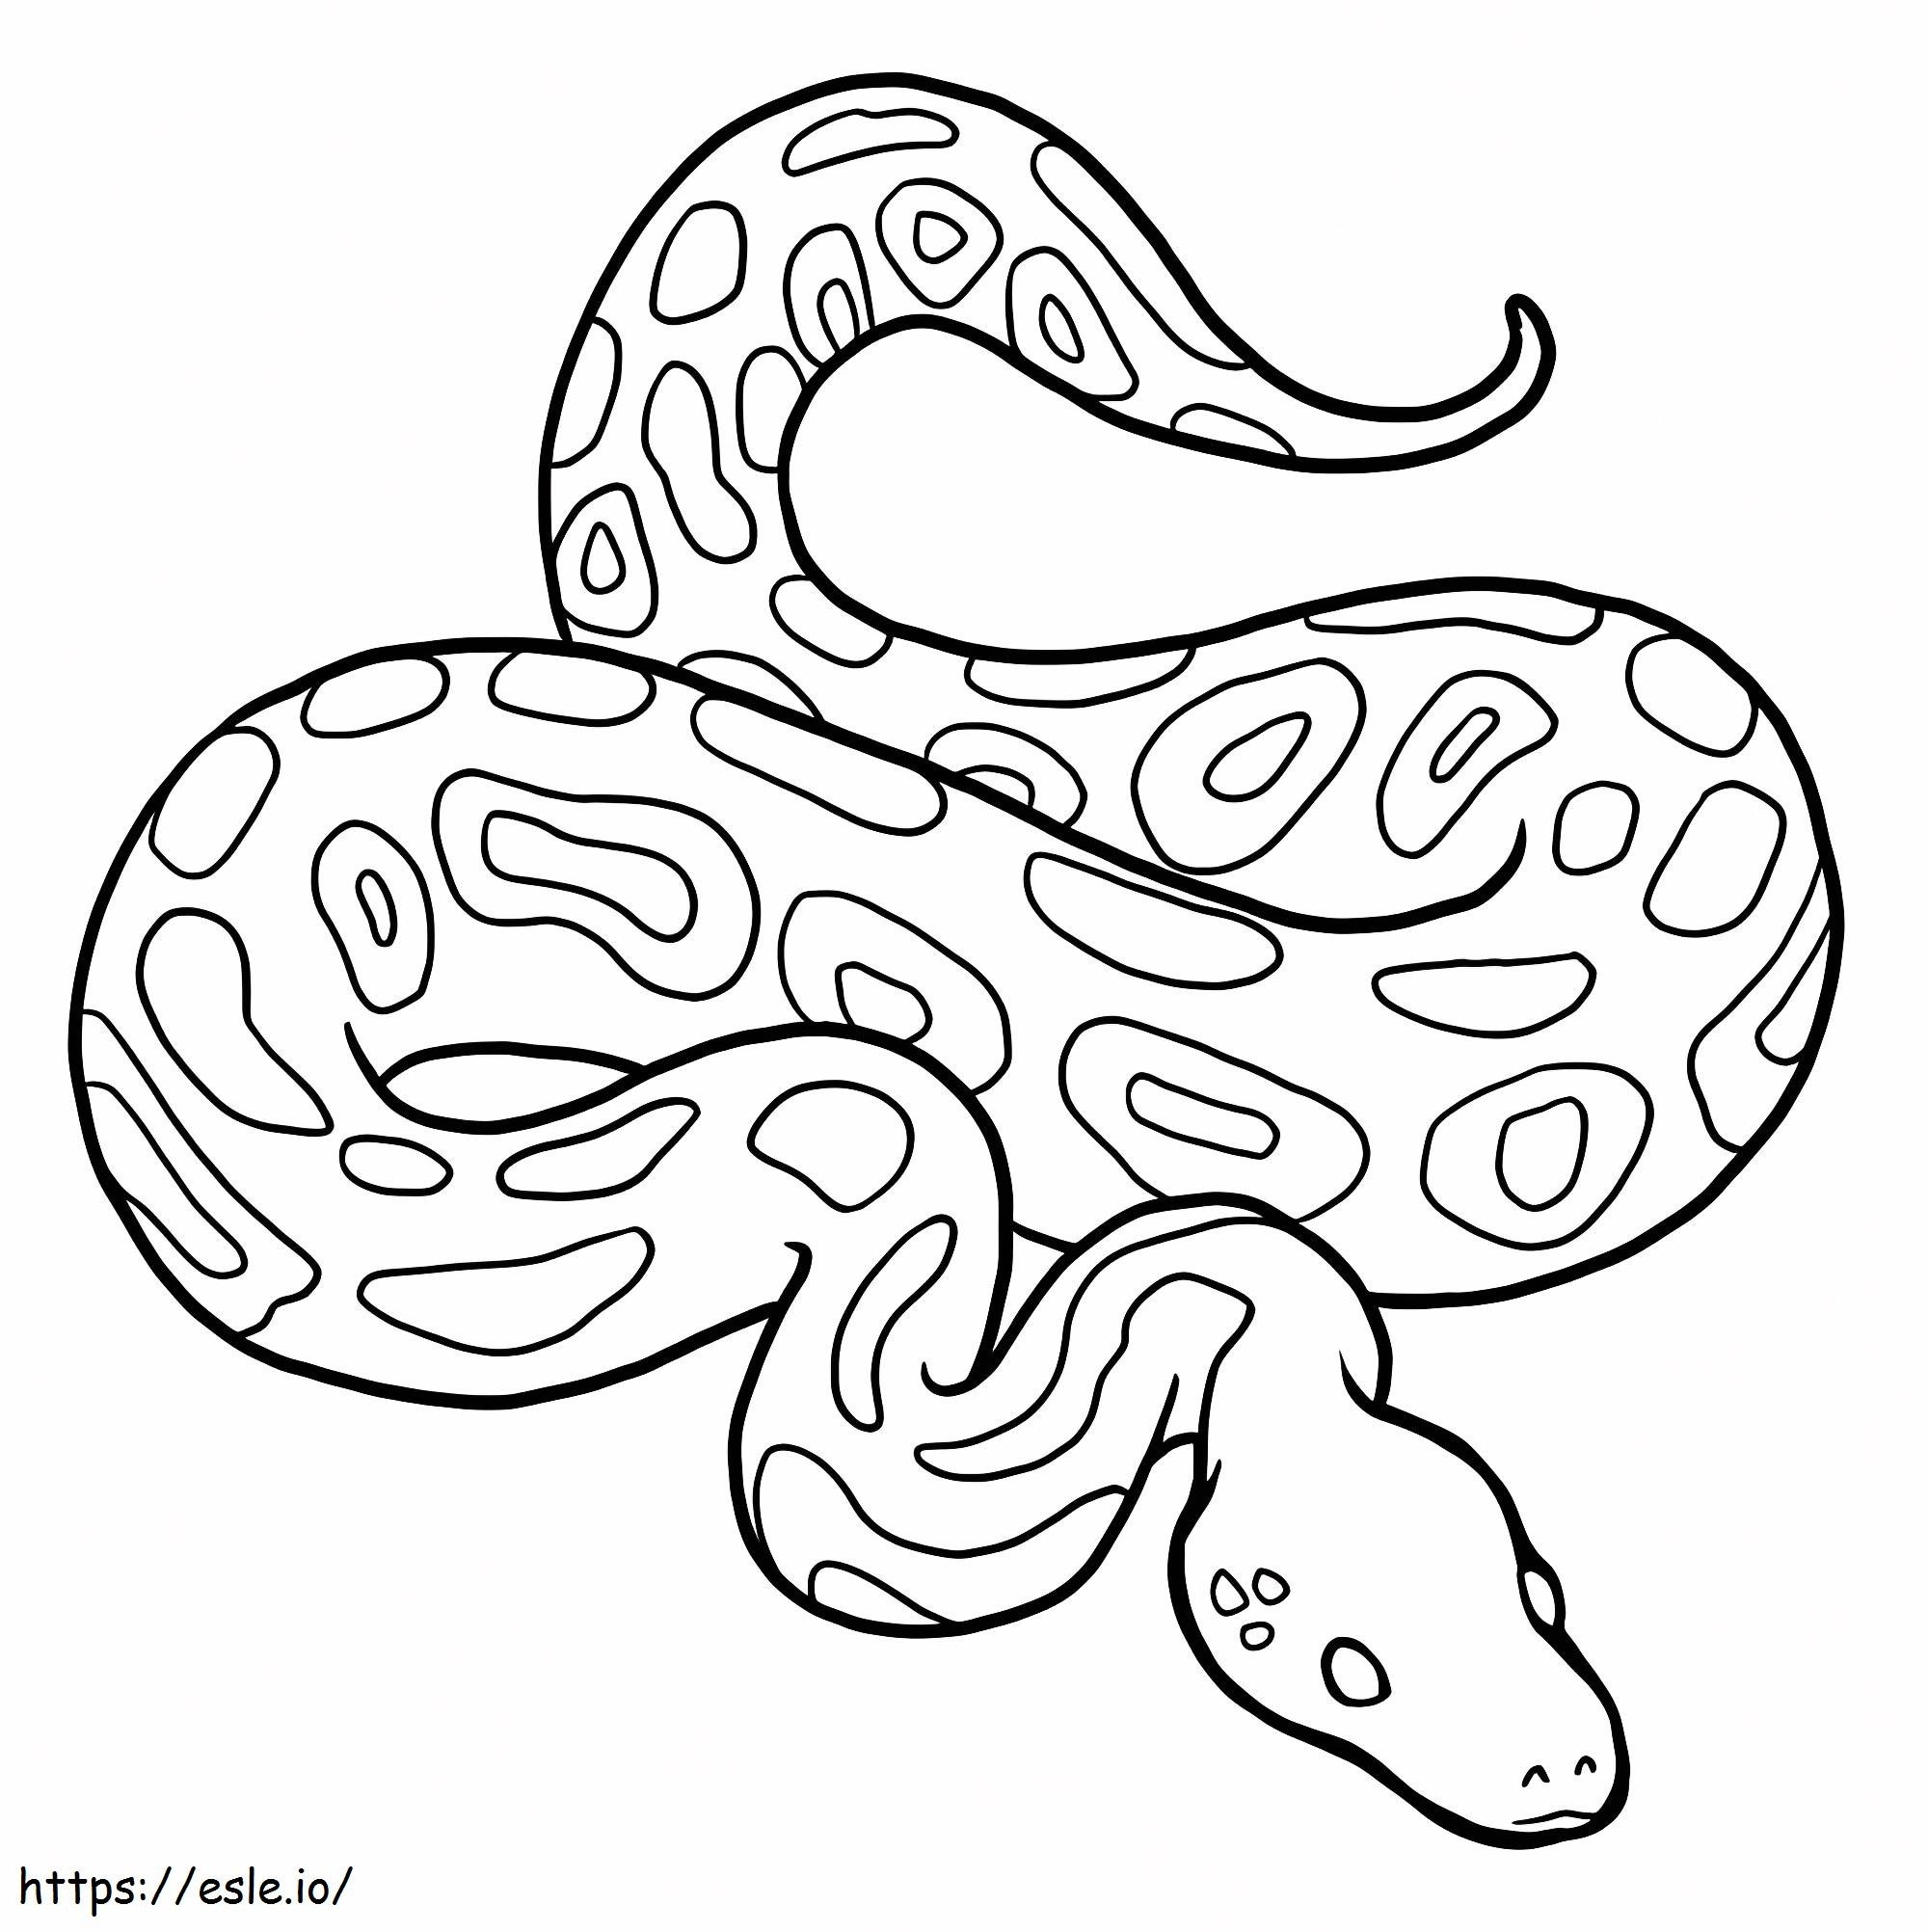 İyi Python boyama